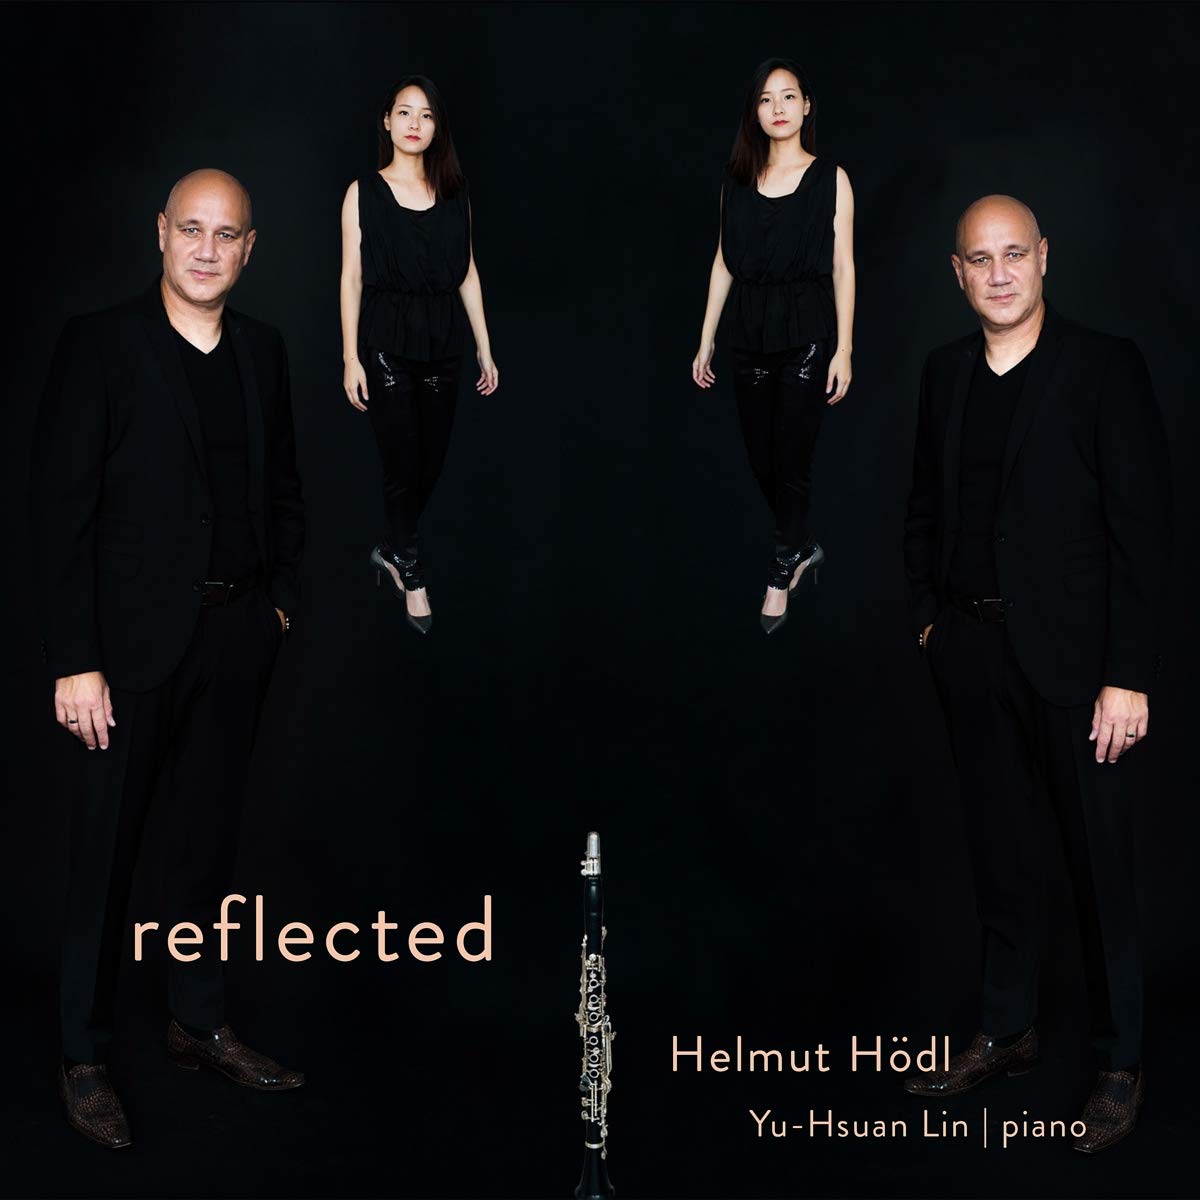 Audio Cd Helmut Hodl - Reflected (2 Cd) NUOVO SIGILLATO, EDIZIONE DEL 04/03/2020 SUBITO DISPONIBILE